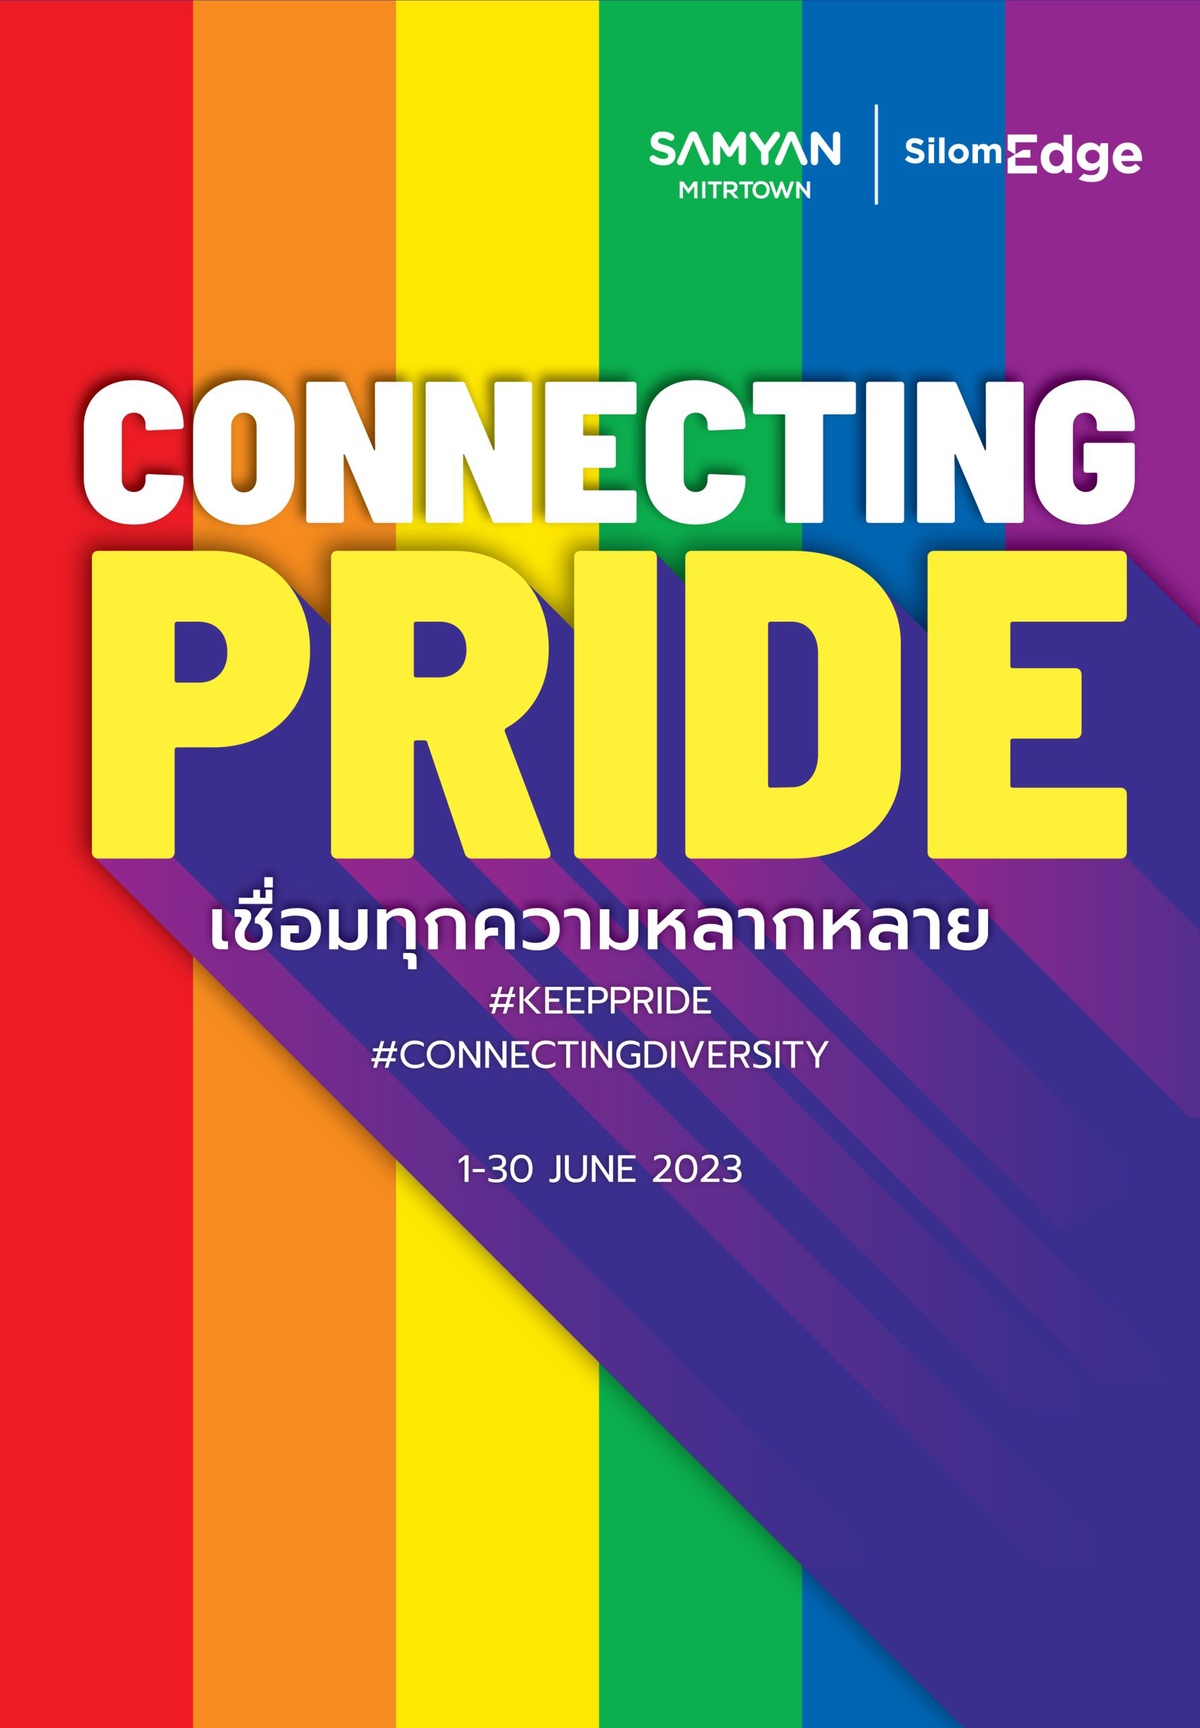 เฟรเซอร์ส พร็อพเพอร์ตี้ คอมเมอร์เชียล (ประเทศไทย) ศูนย์การค้าสามย่านมิตรทาวน์ และ ศูนย์การค้าสีลมเอจ ประกาศเชื่อมต่อสองแยกบนถนนพระราม 4 ให้เป็น Connecting Pride